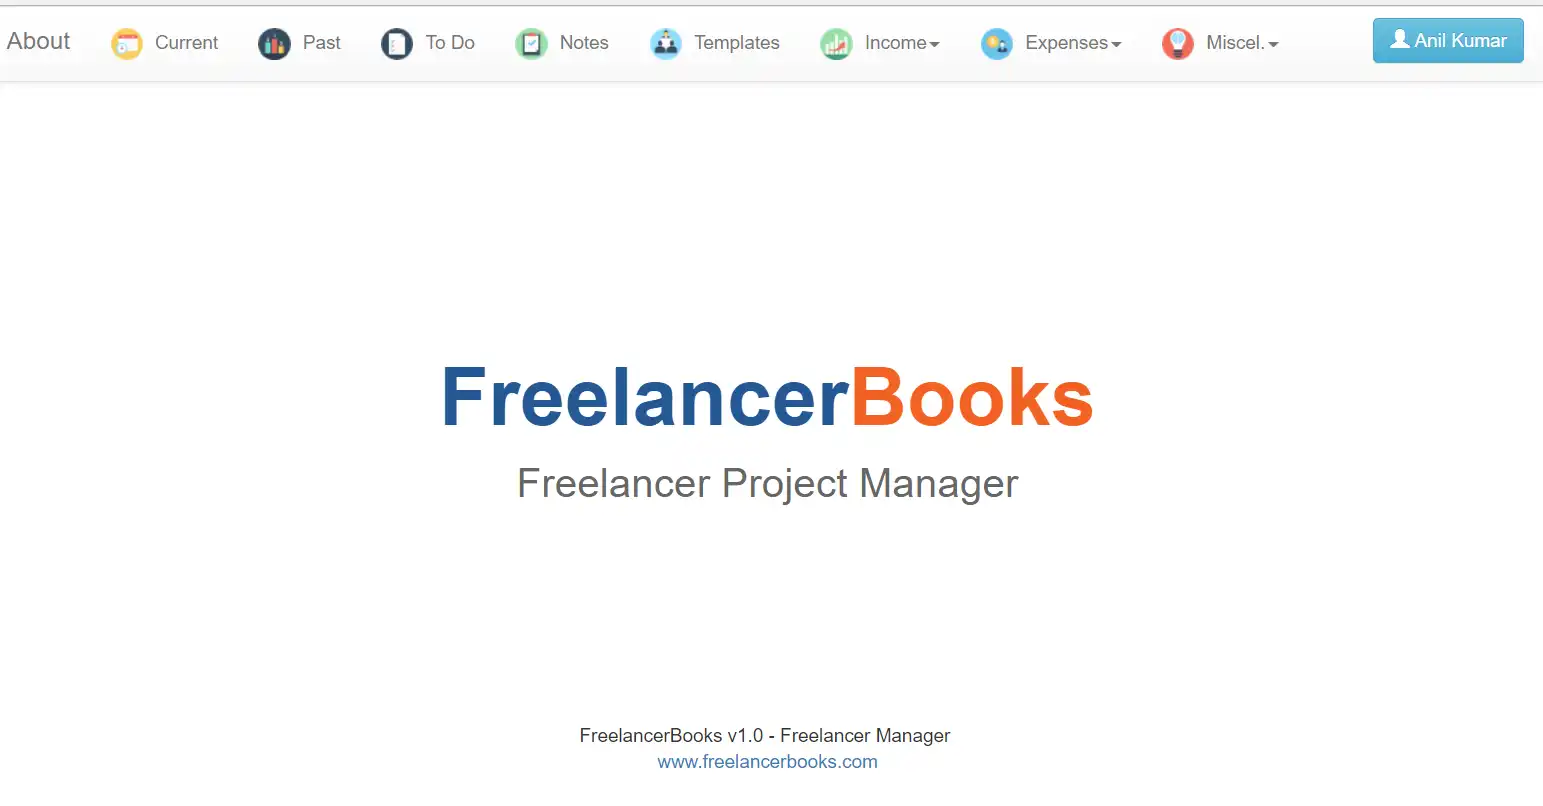 ດາວ​ໂຫຼດ​ເຄື່ອງ​ມື​ເວັບ​ໄຊ​ຕ​໌​ຫຼື app ເວັບ​ໄຊ​ຕ​໌ FreelancerBooks - ການ​ຄຸ້ມ​ຄອງ​ໂຄງ​ການ​